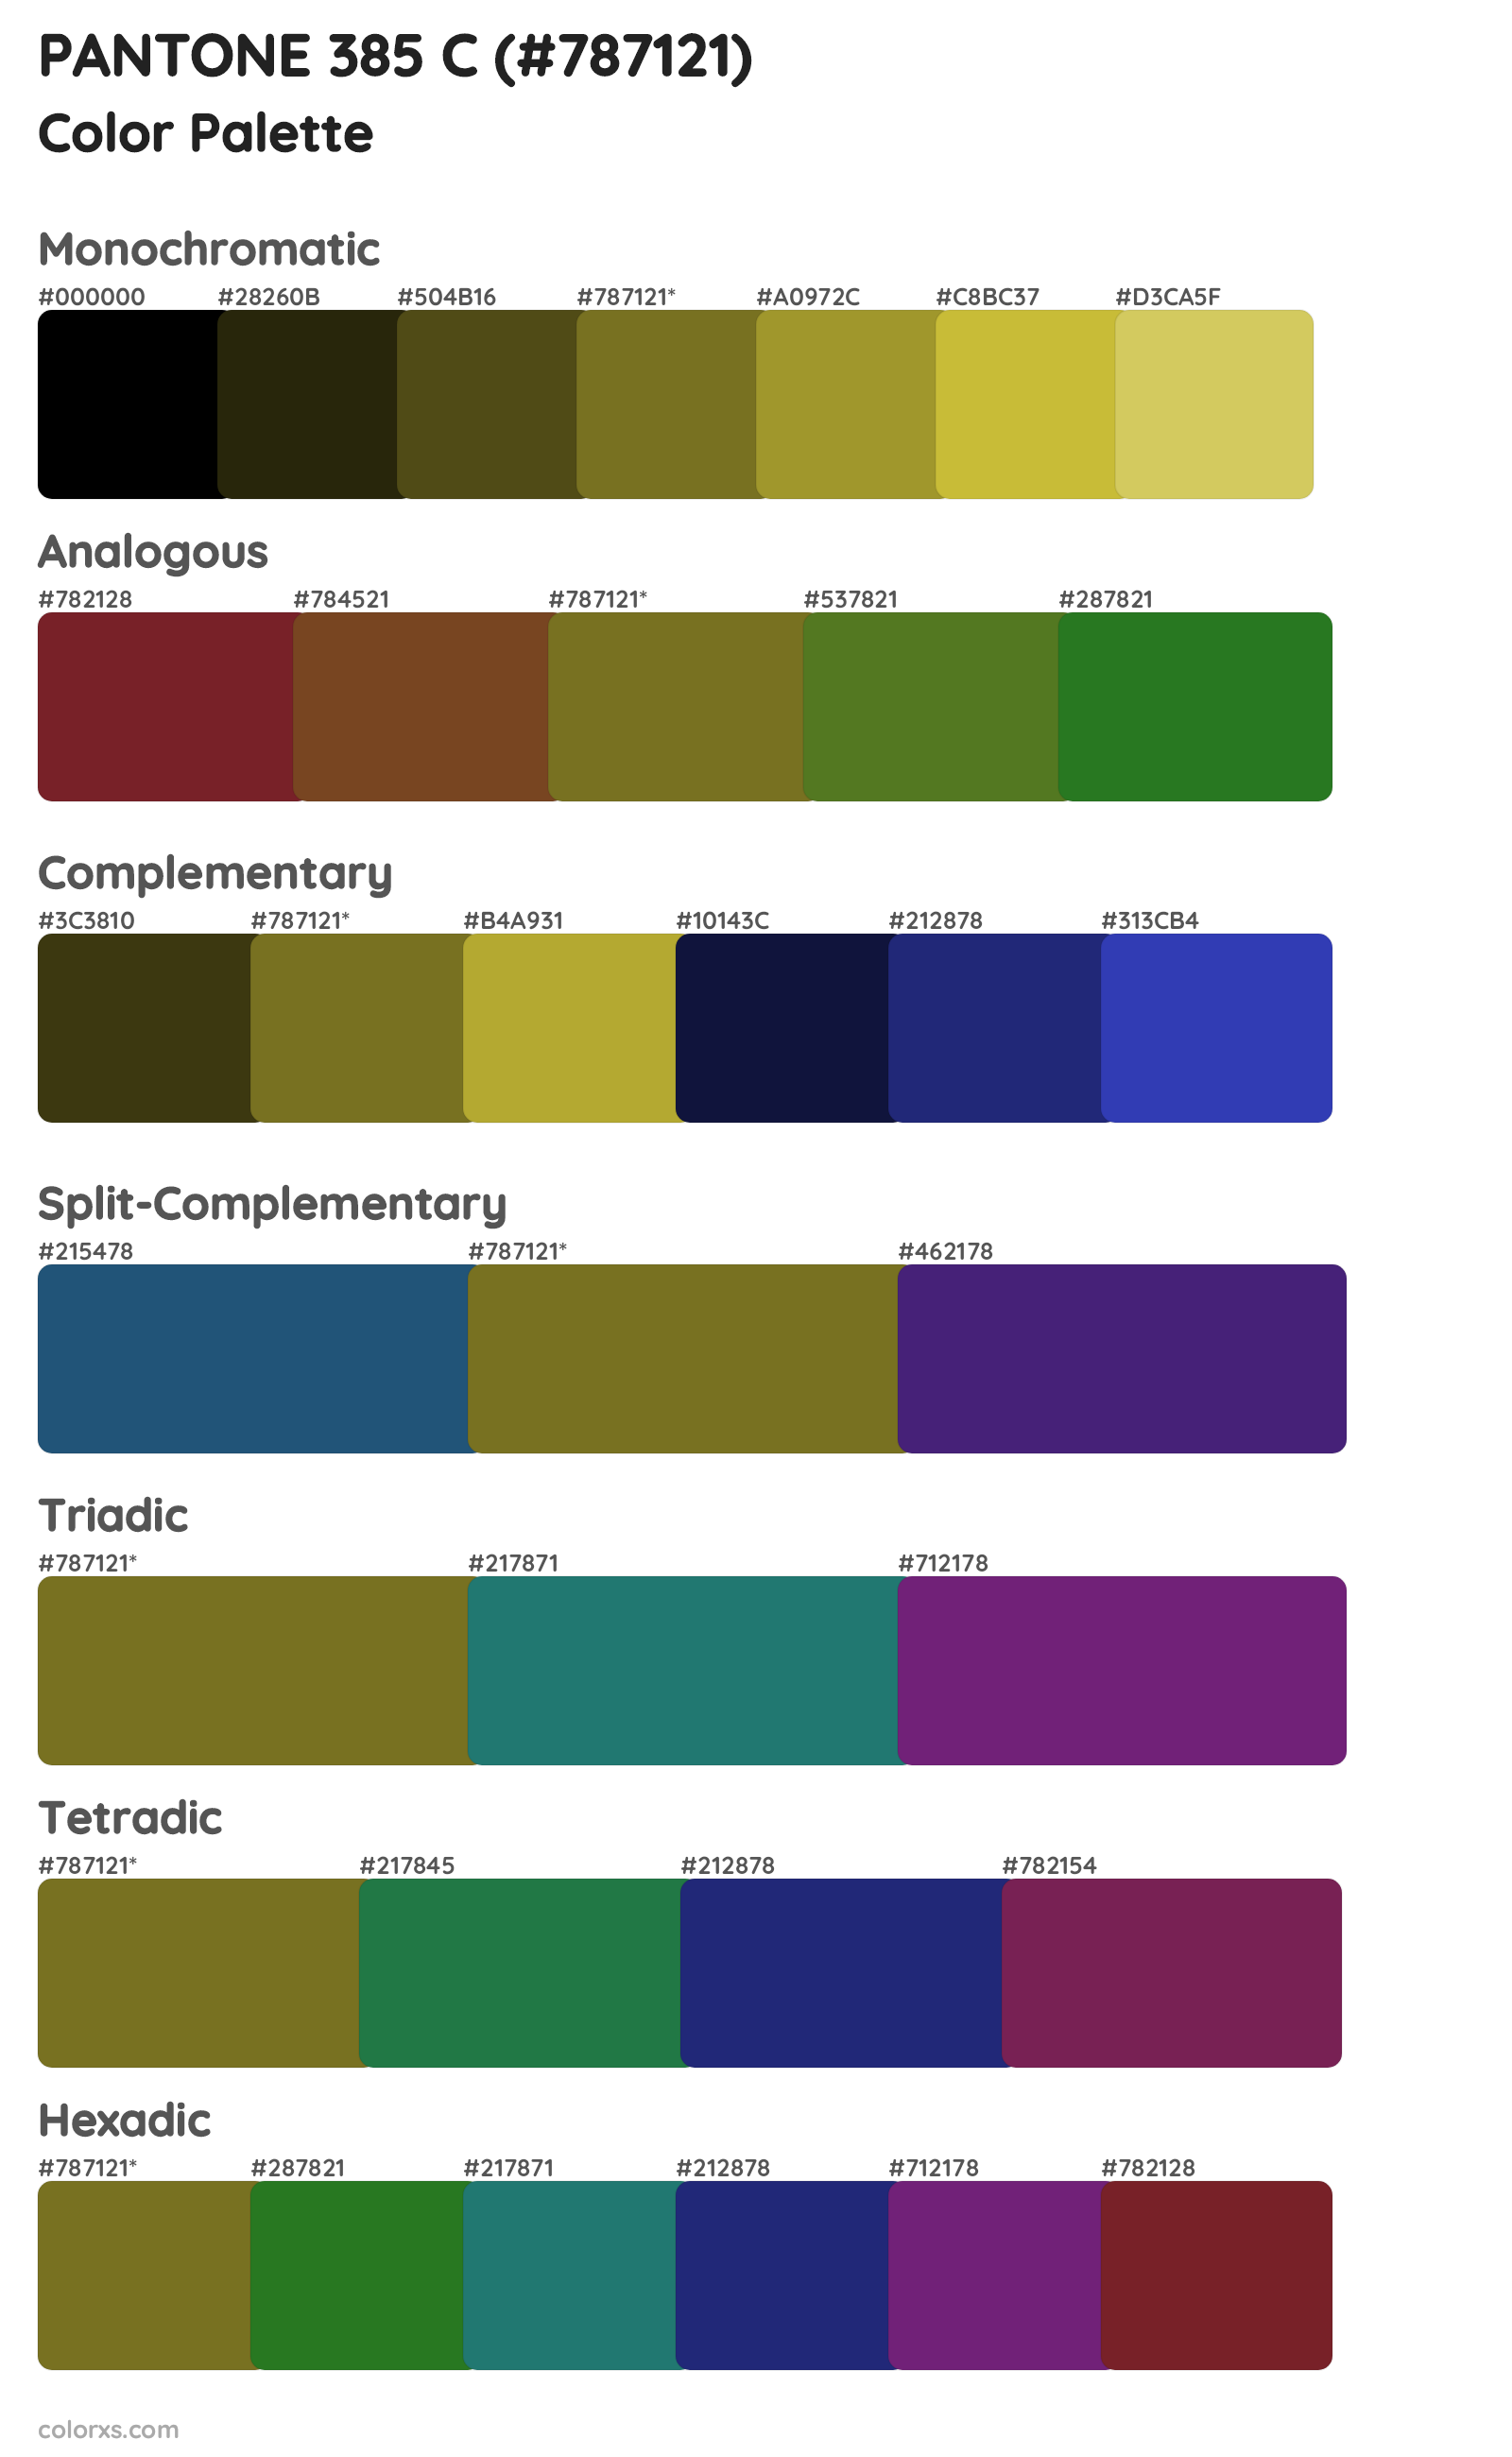 PANTONE 385 C Color Scheme Palettes